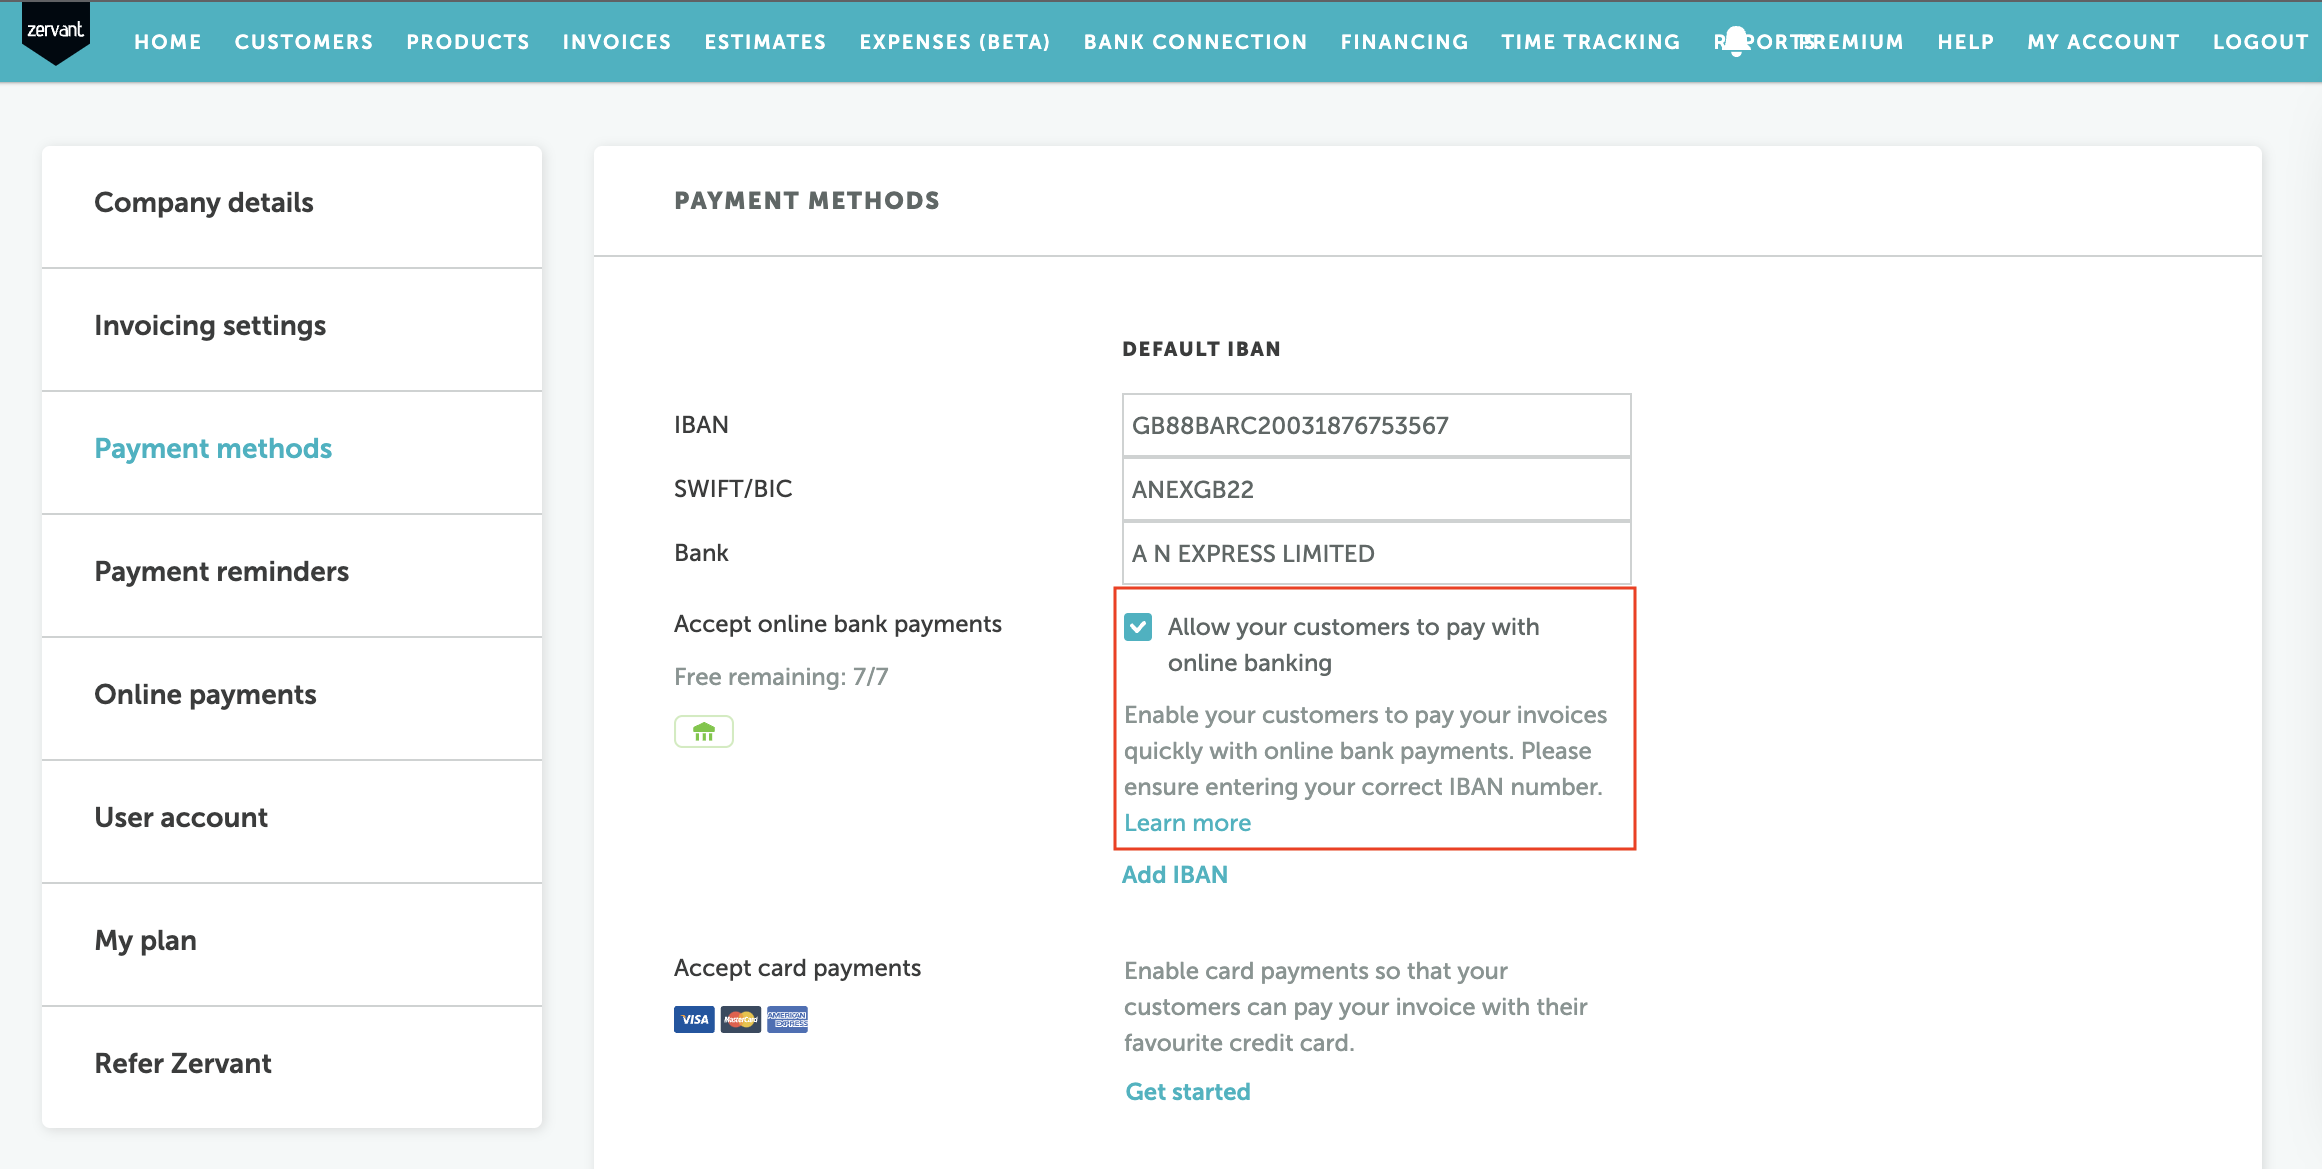 Accept_online_payments_EN.png